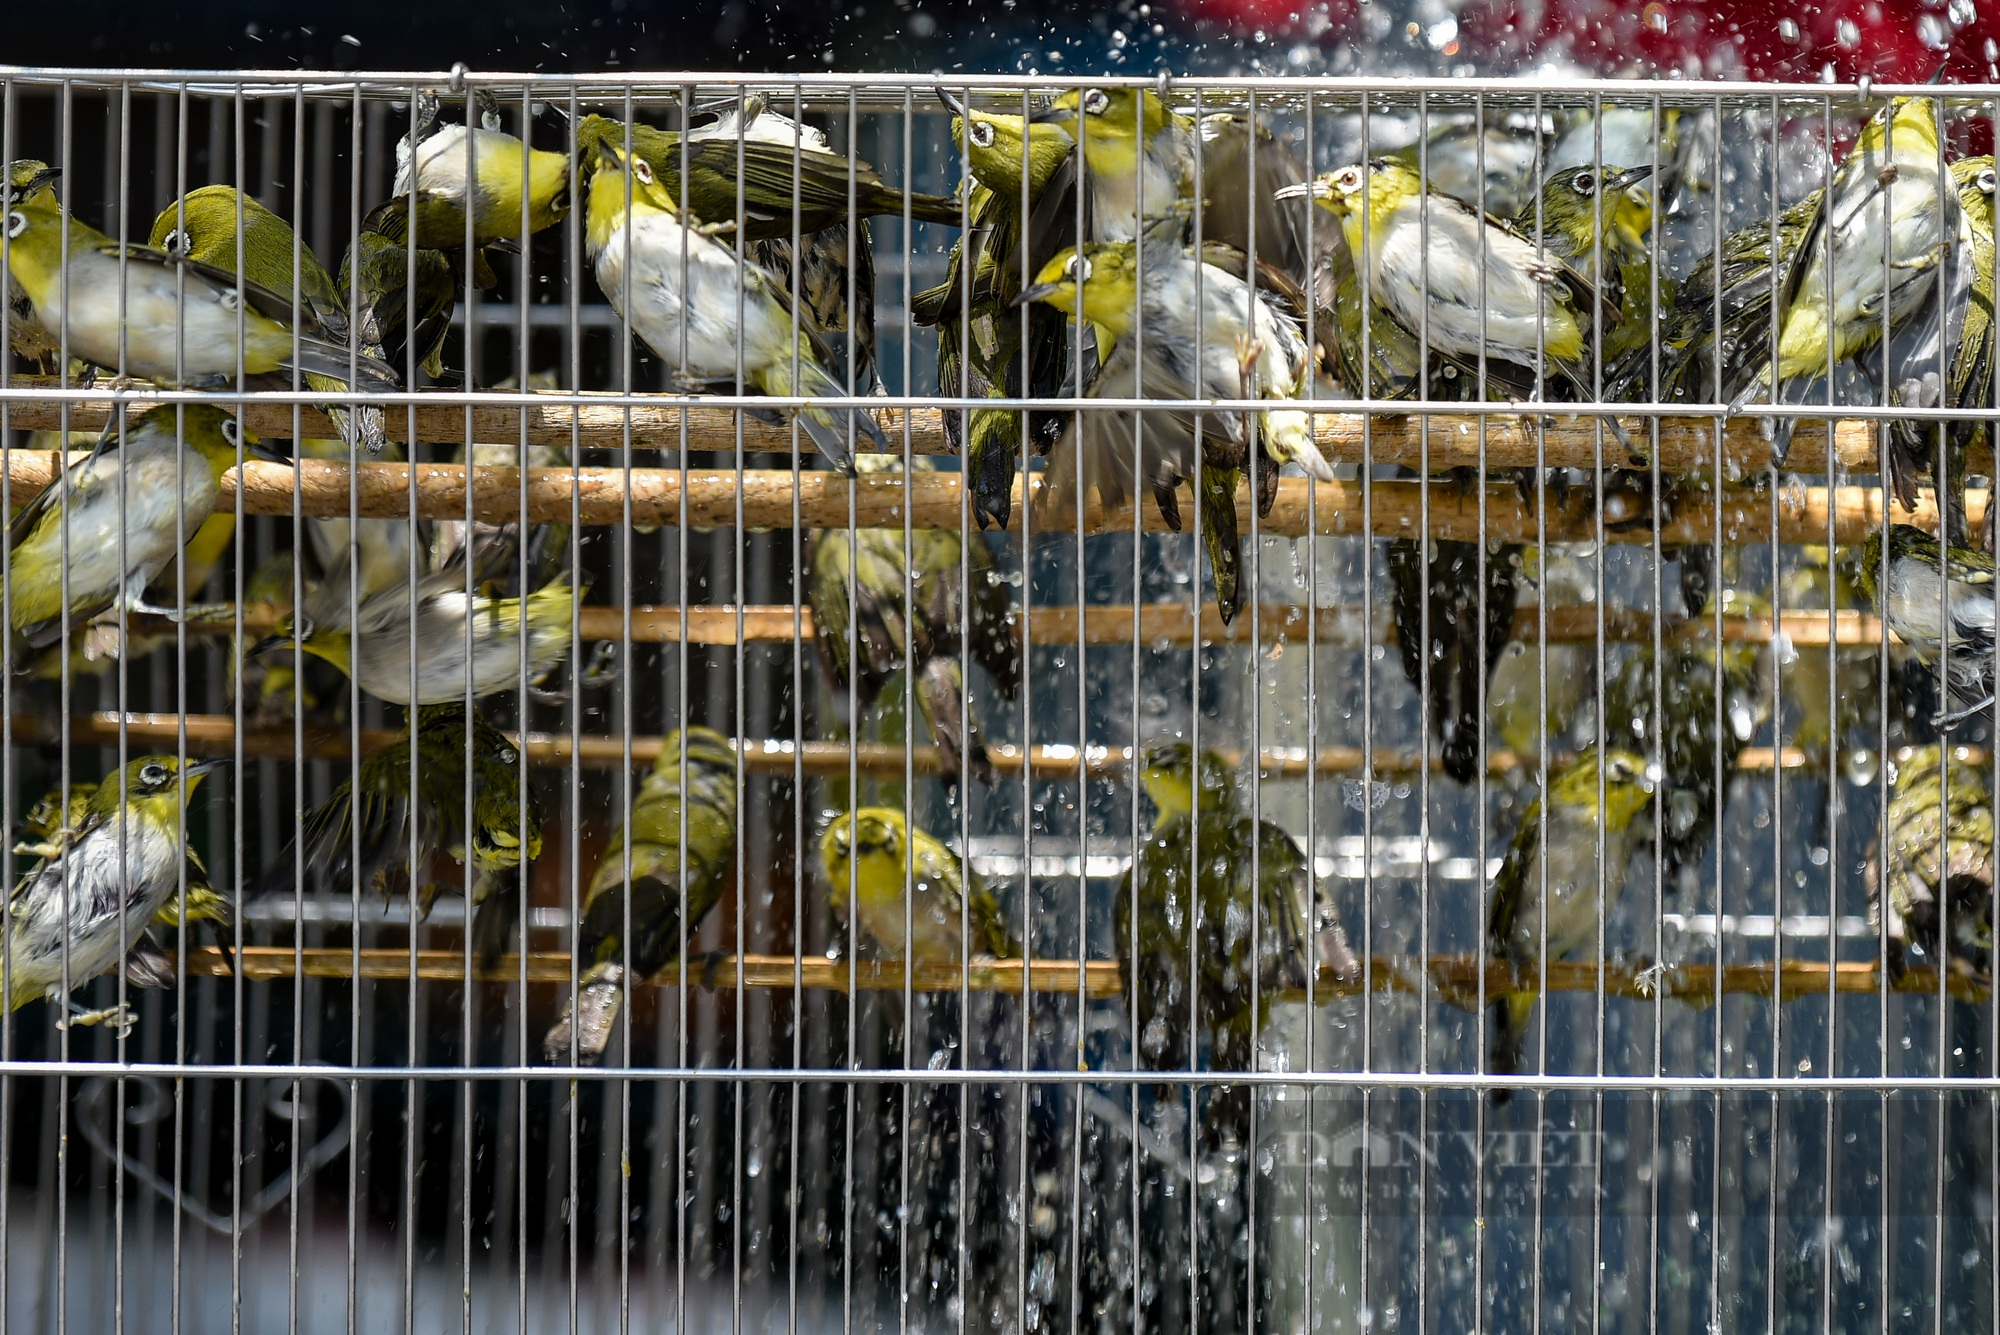 Hàng nghìn chú chim phóng sinh được bán ra trong dịp rằm tháng 7 - Ảnh 11.